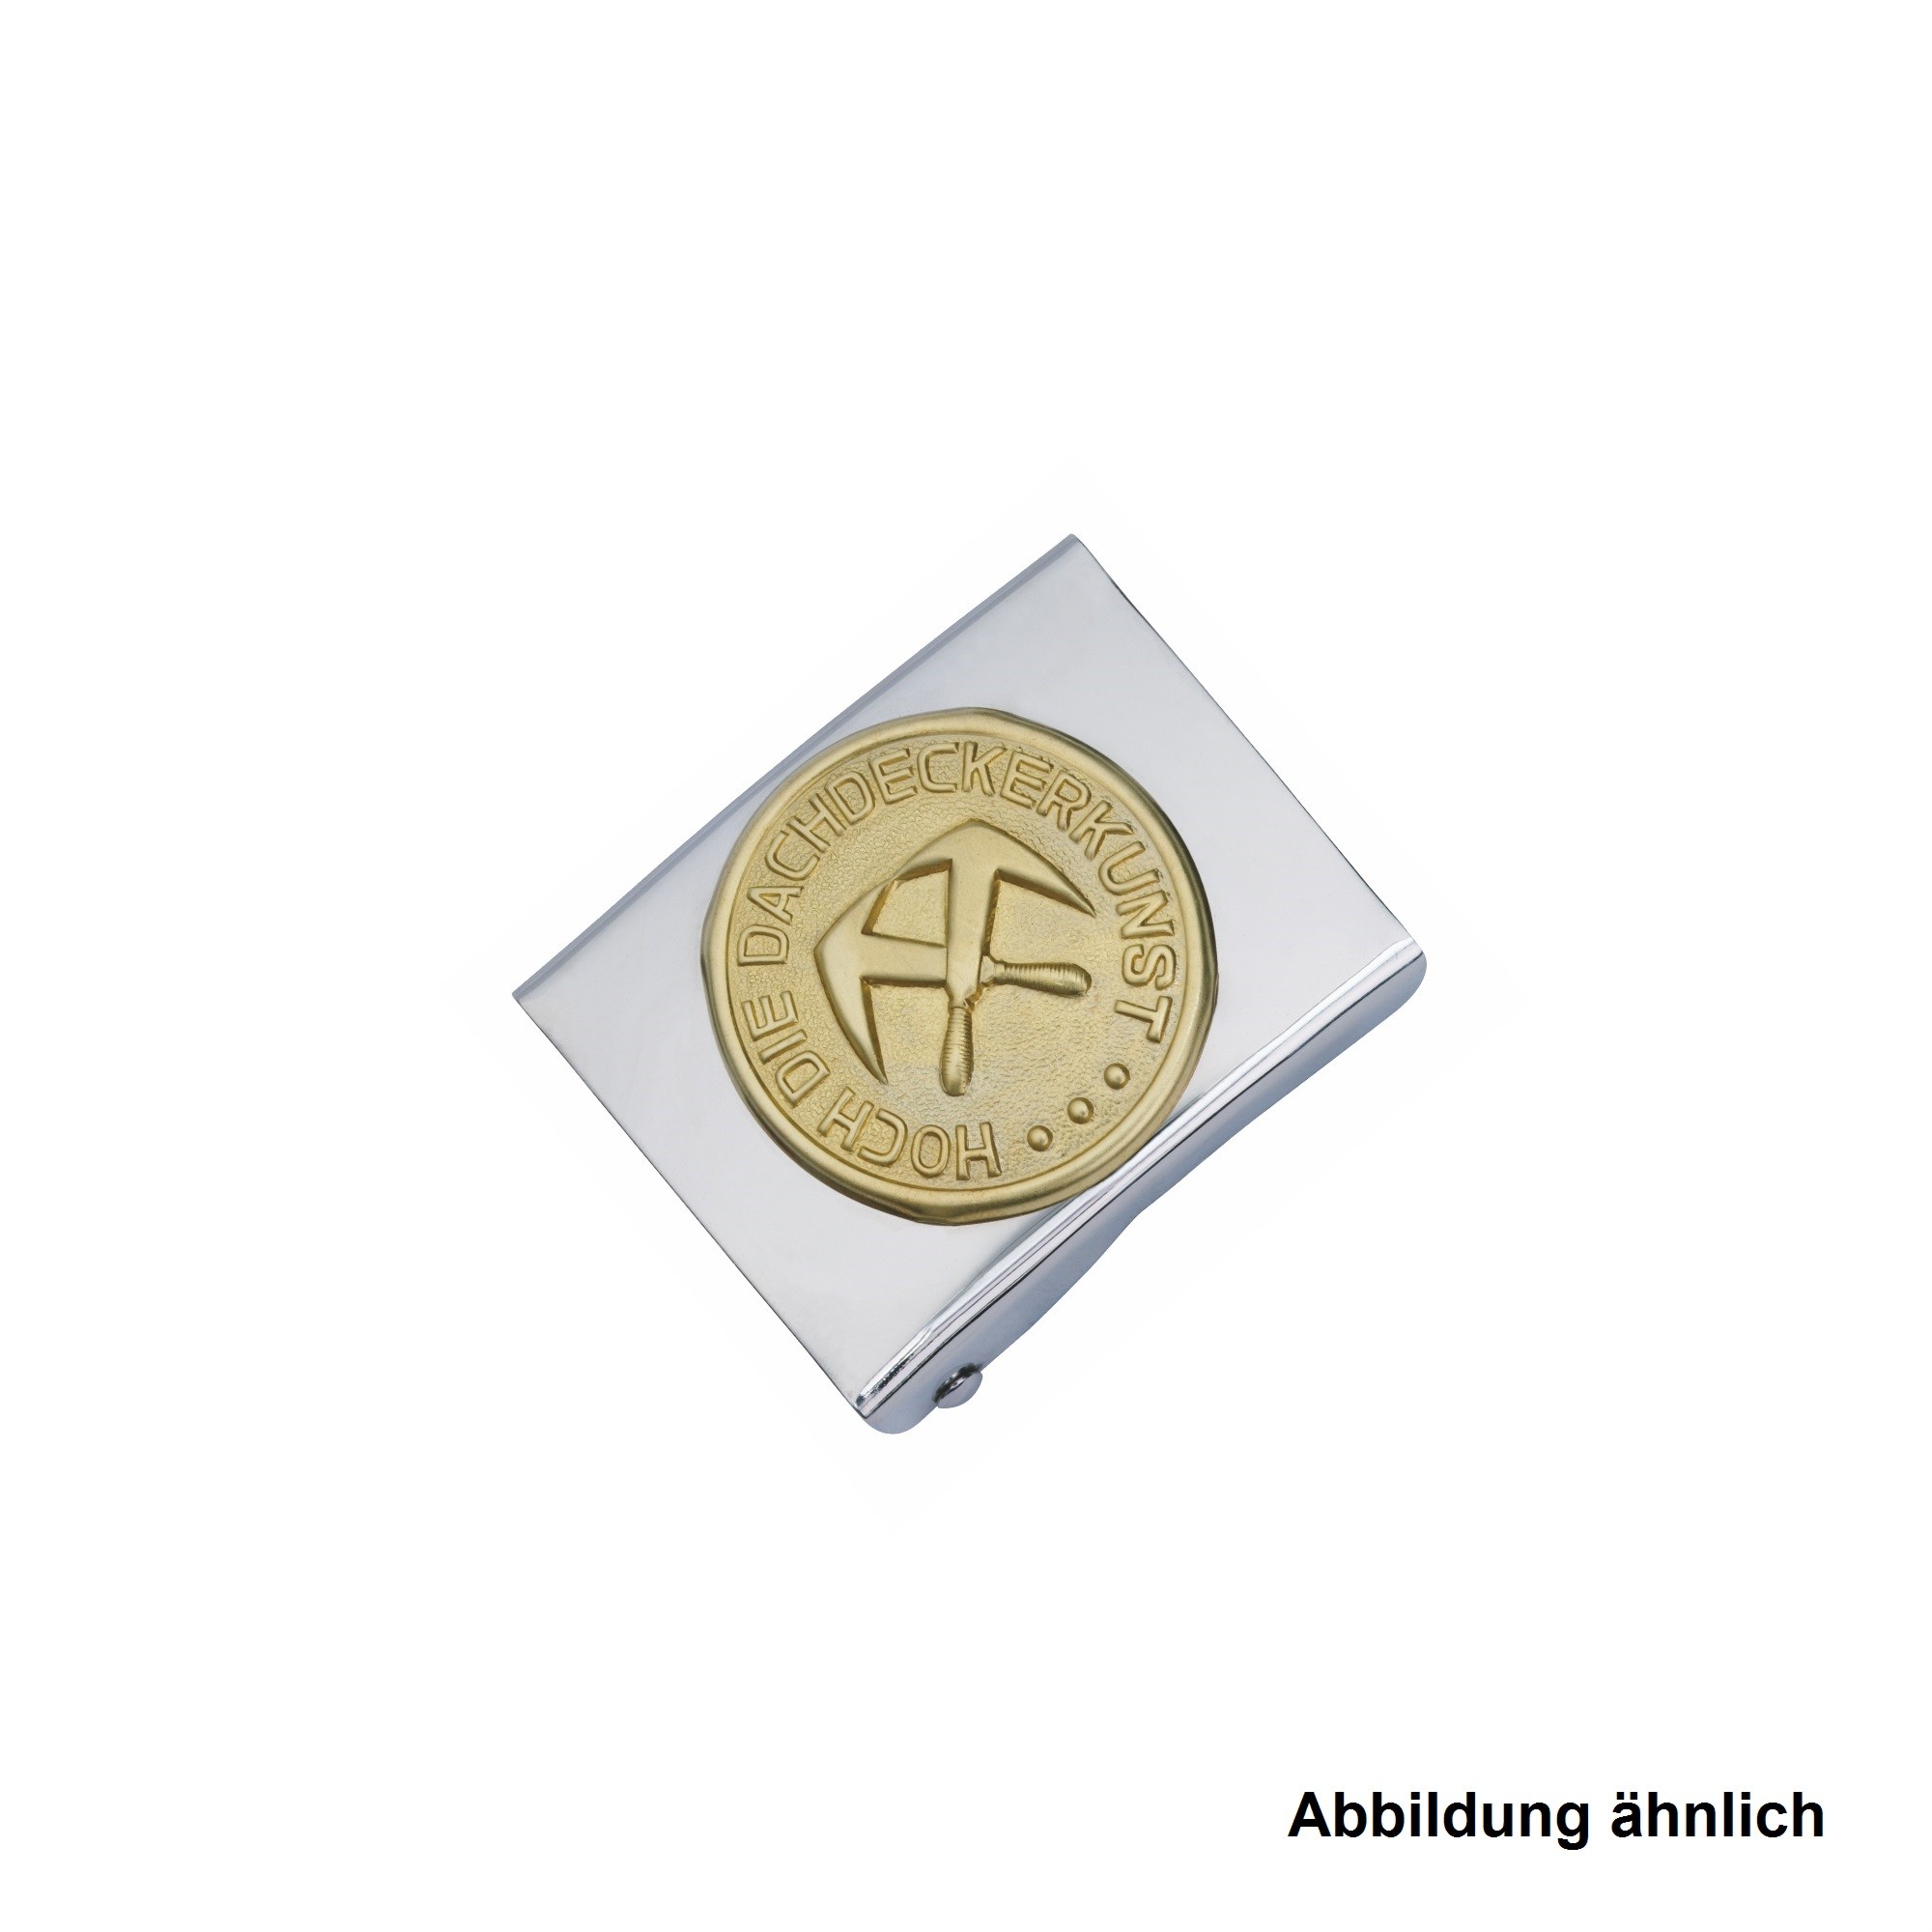 Freund Koppelschloss Dachdecker Neusilberausführung, Messing-Emblem, 45 g